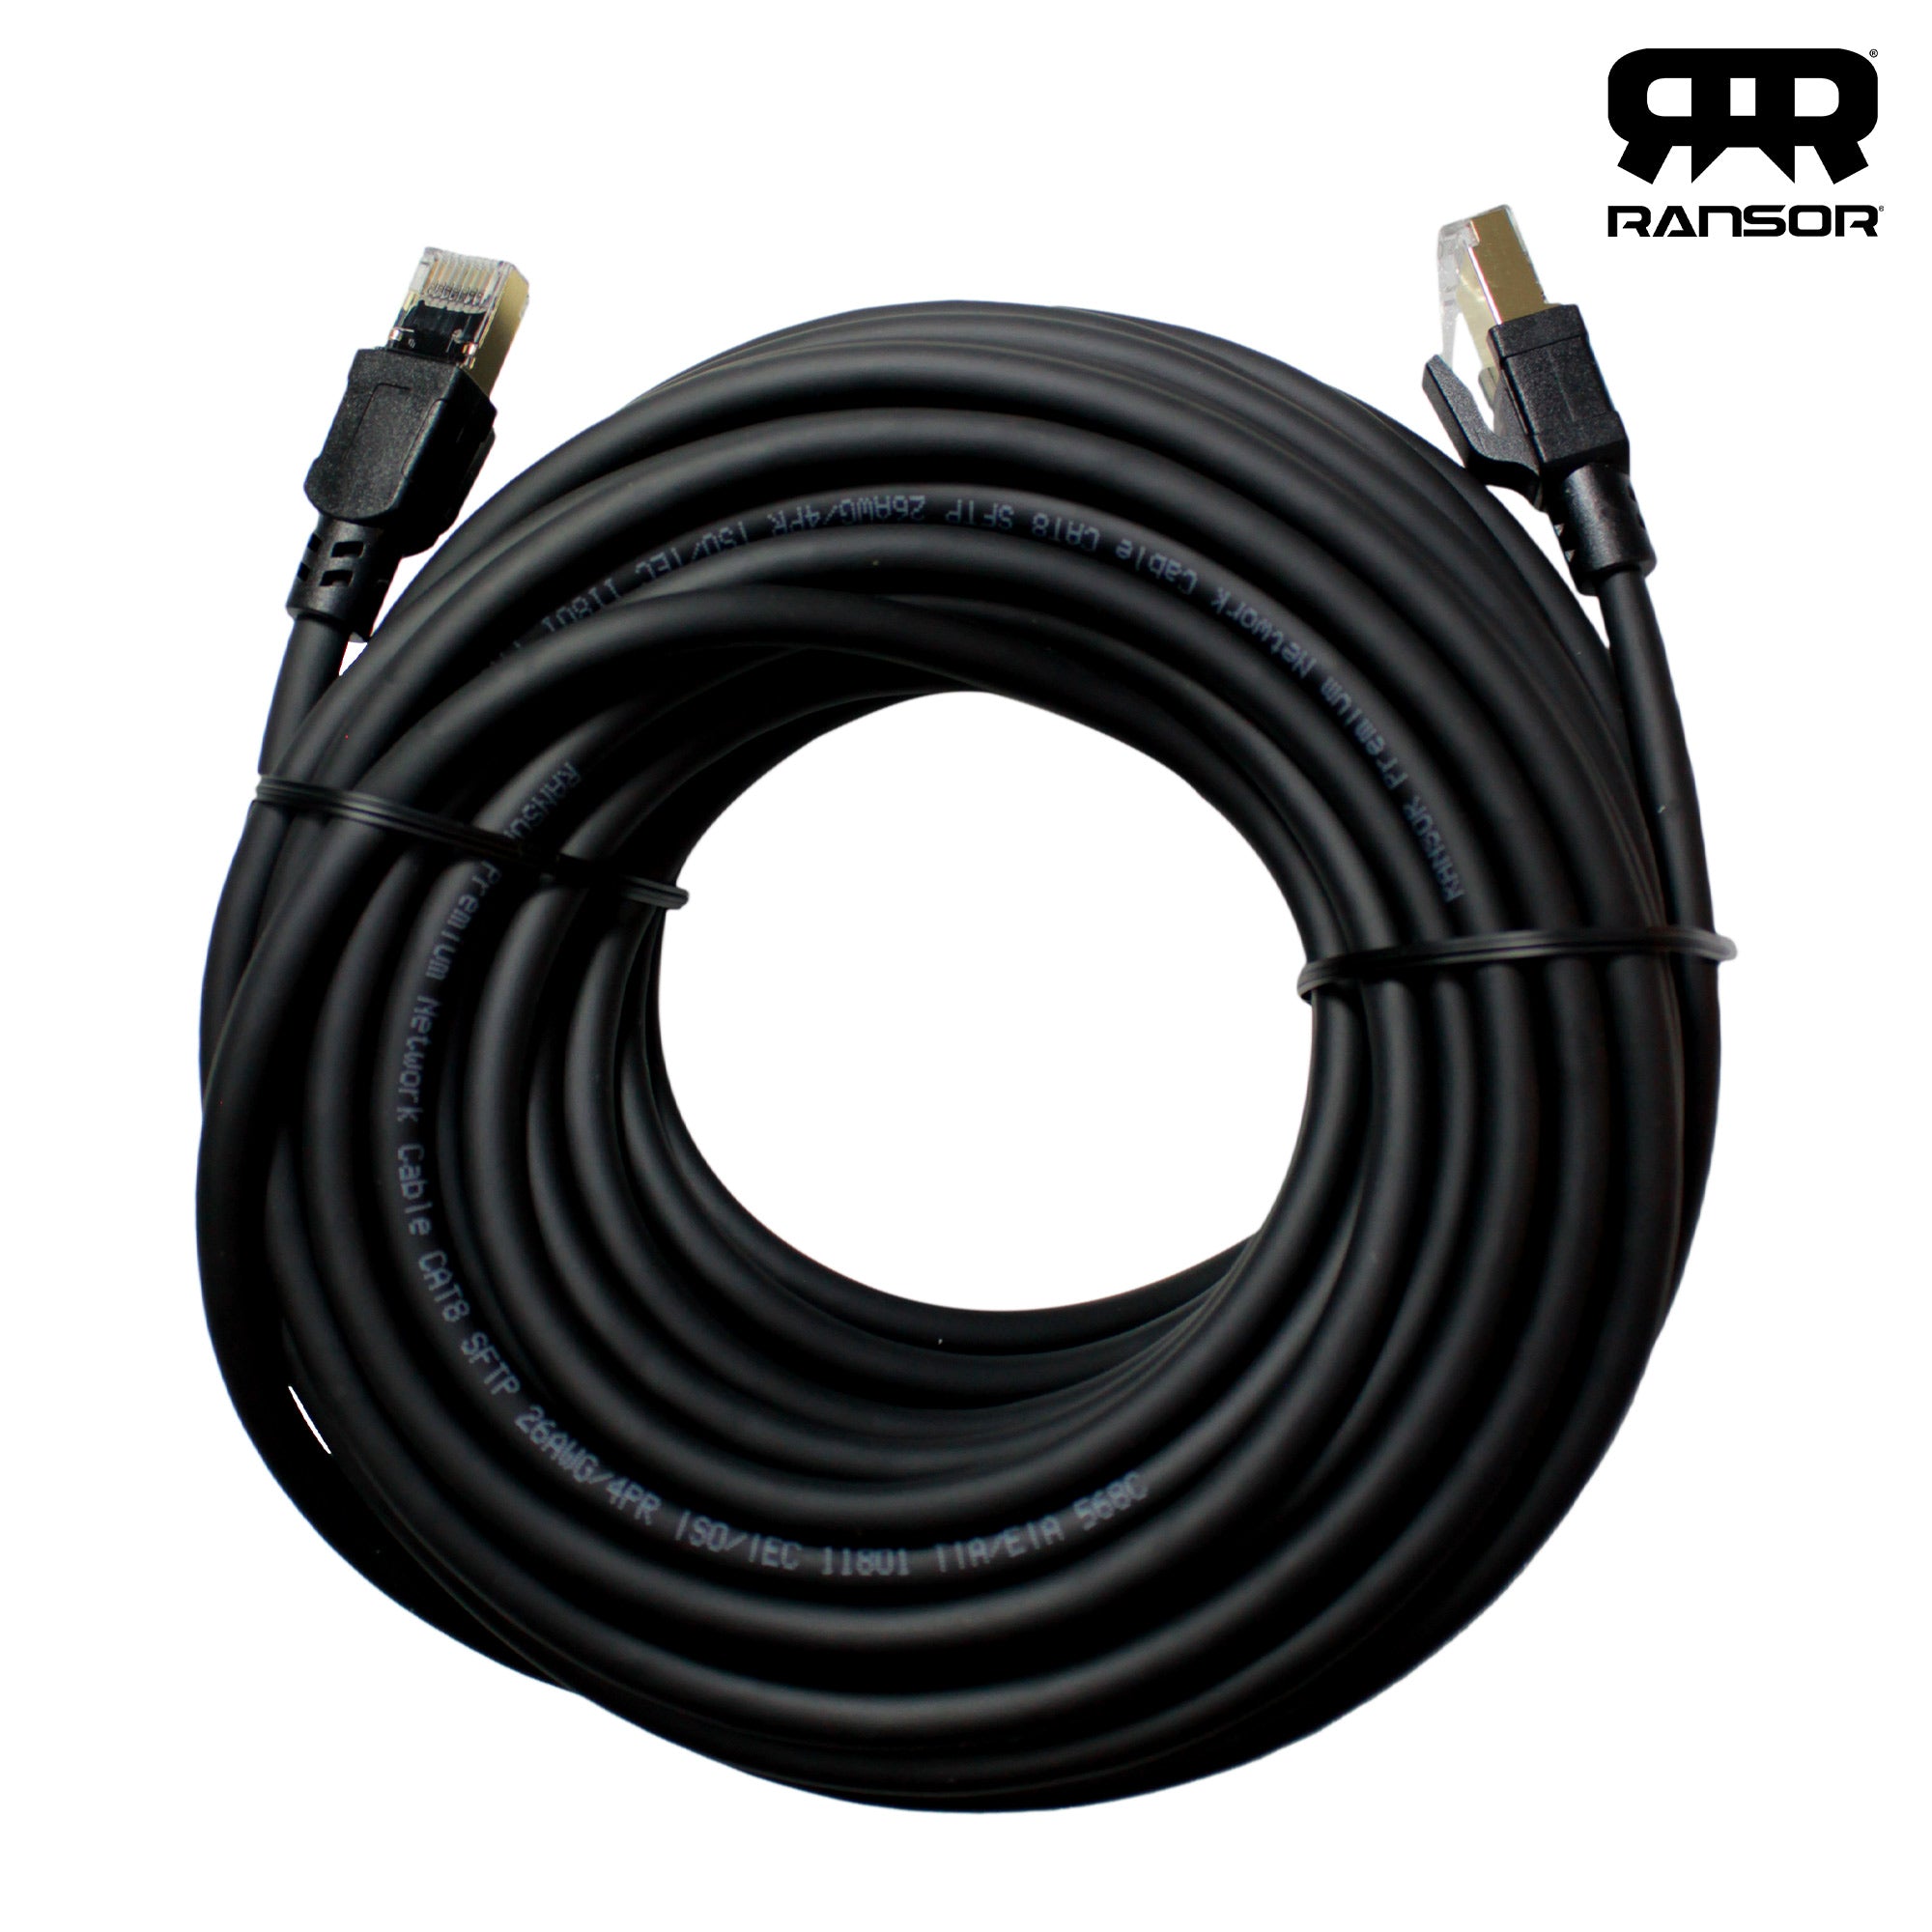 Ransor® Cat8 15m 49ft Premium Ethernet Cable Black